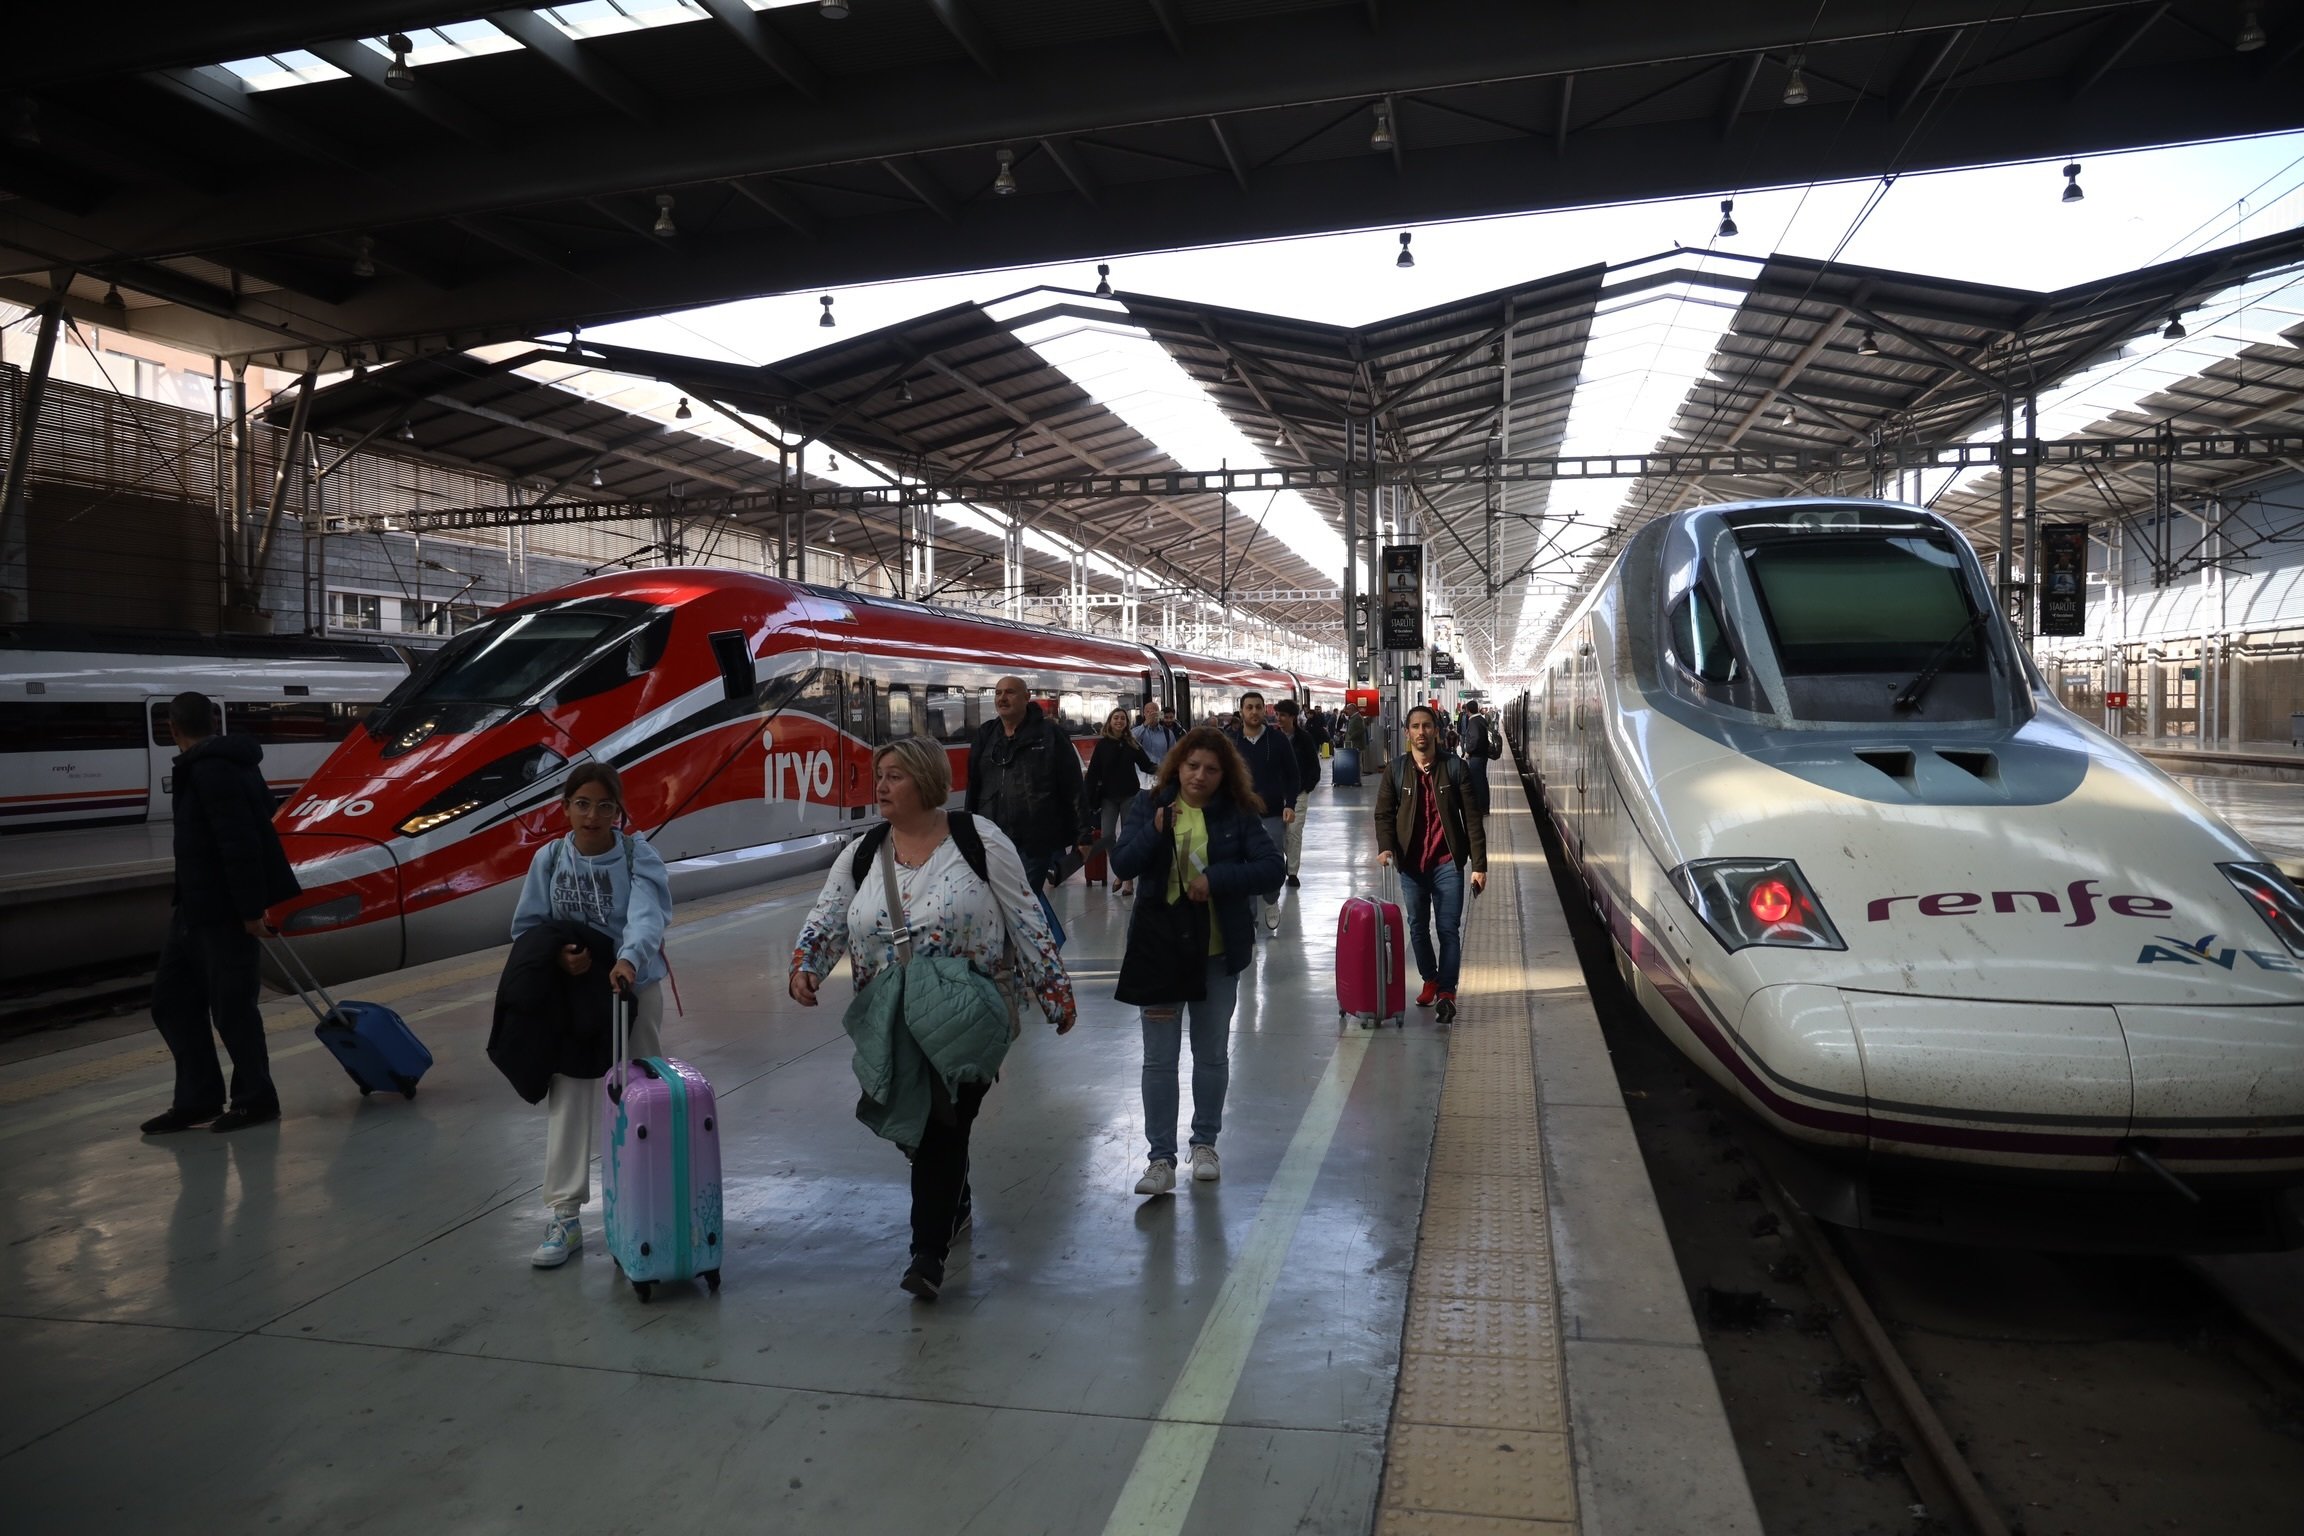 El tren Avlo s'estrena a Andalusia aquest mes de juny i Iryo, a Alacant i Tarragona